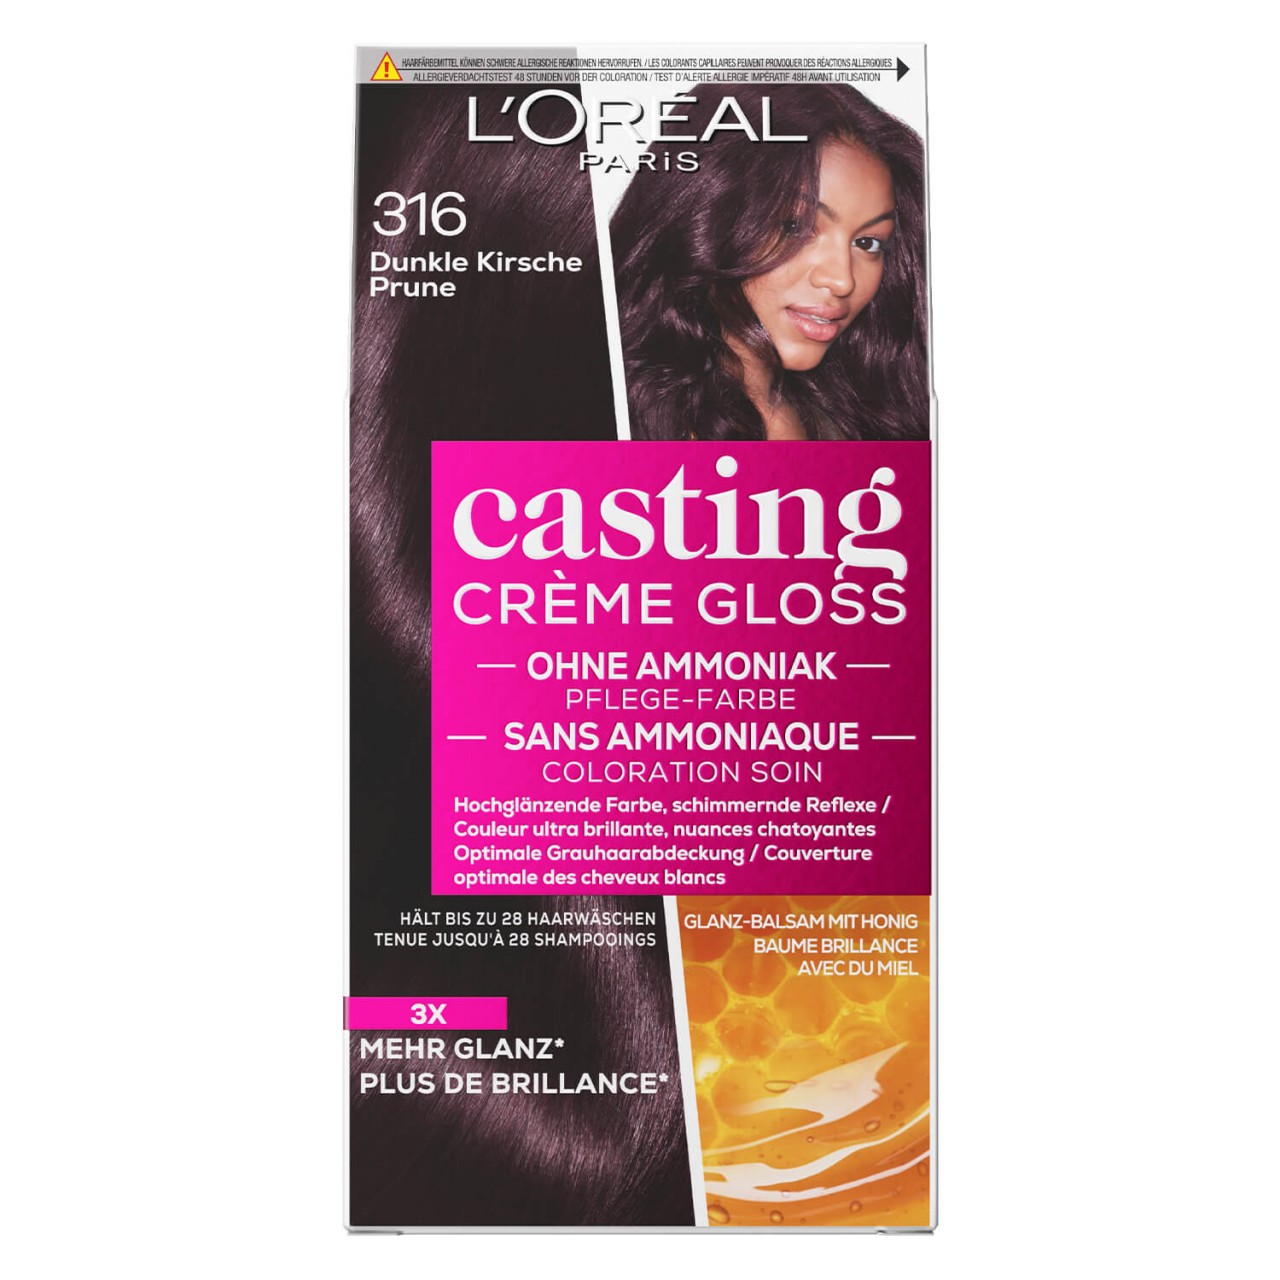 LOréal Casting - Crème Gloss 316 Dunkle Kirsche von L'Oréal Paris